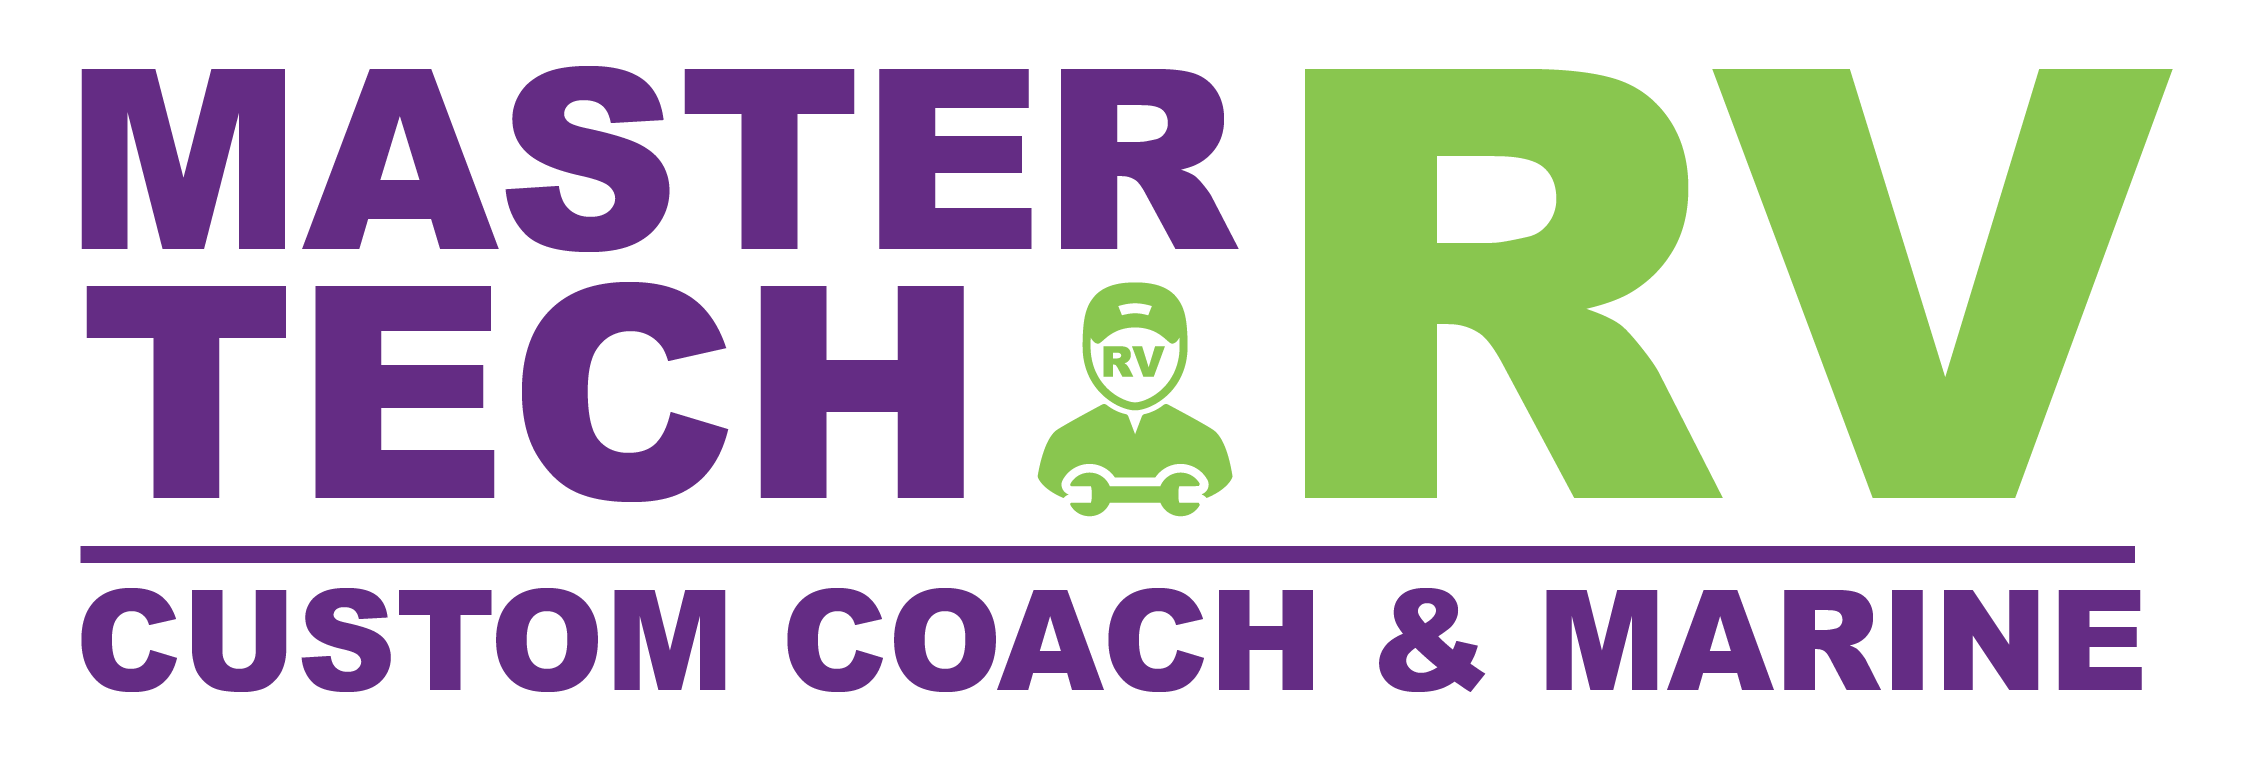 Master Tech RV Logo